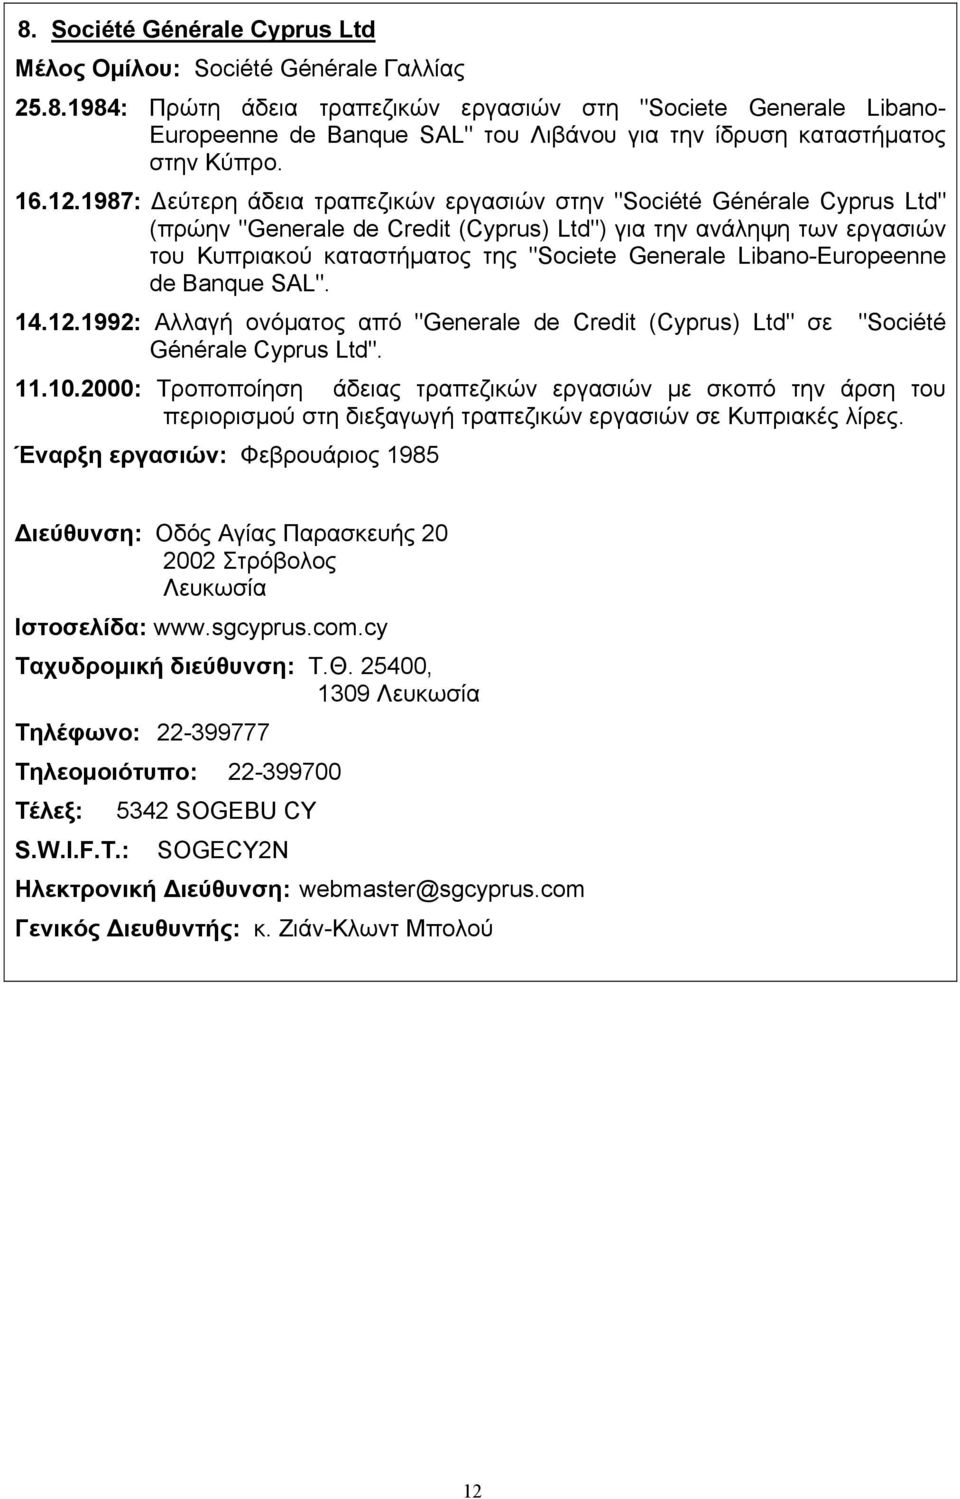 1987: εύτερη άδεια τραπεζικών εργασιών στην "Société Générale Cyprus Ltd" (πρώην "Generale de Credit (Cyprus) Ltd") για την ανάληψη των εργασιών του Κυπριακού καταστήµατος της "Societe Generale